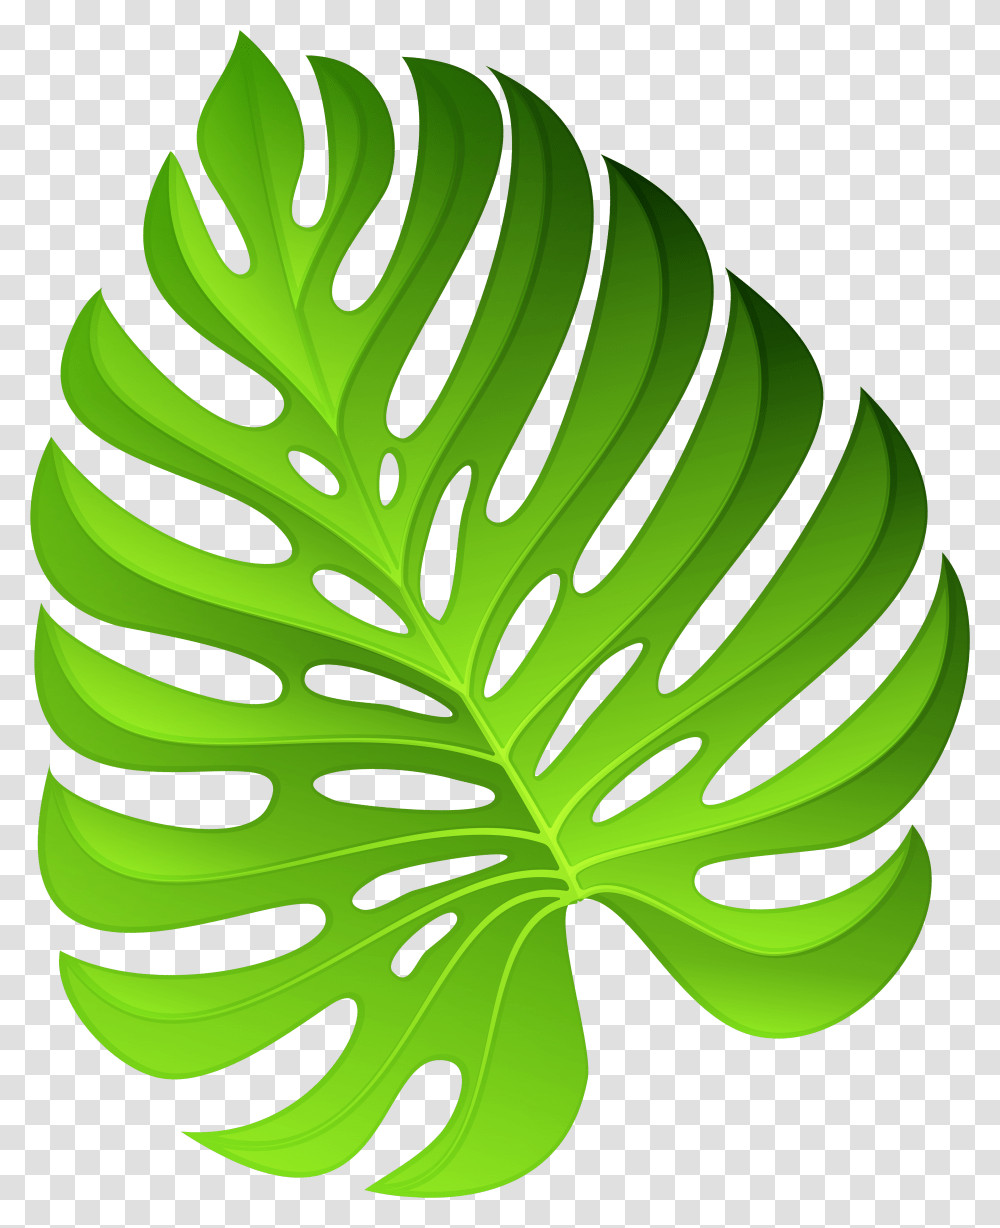 Plant Leaf Clipart, Green, Droplet, Veins Transparent Png